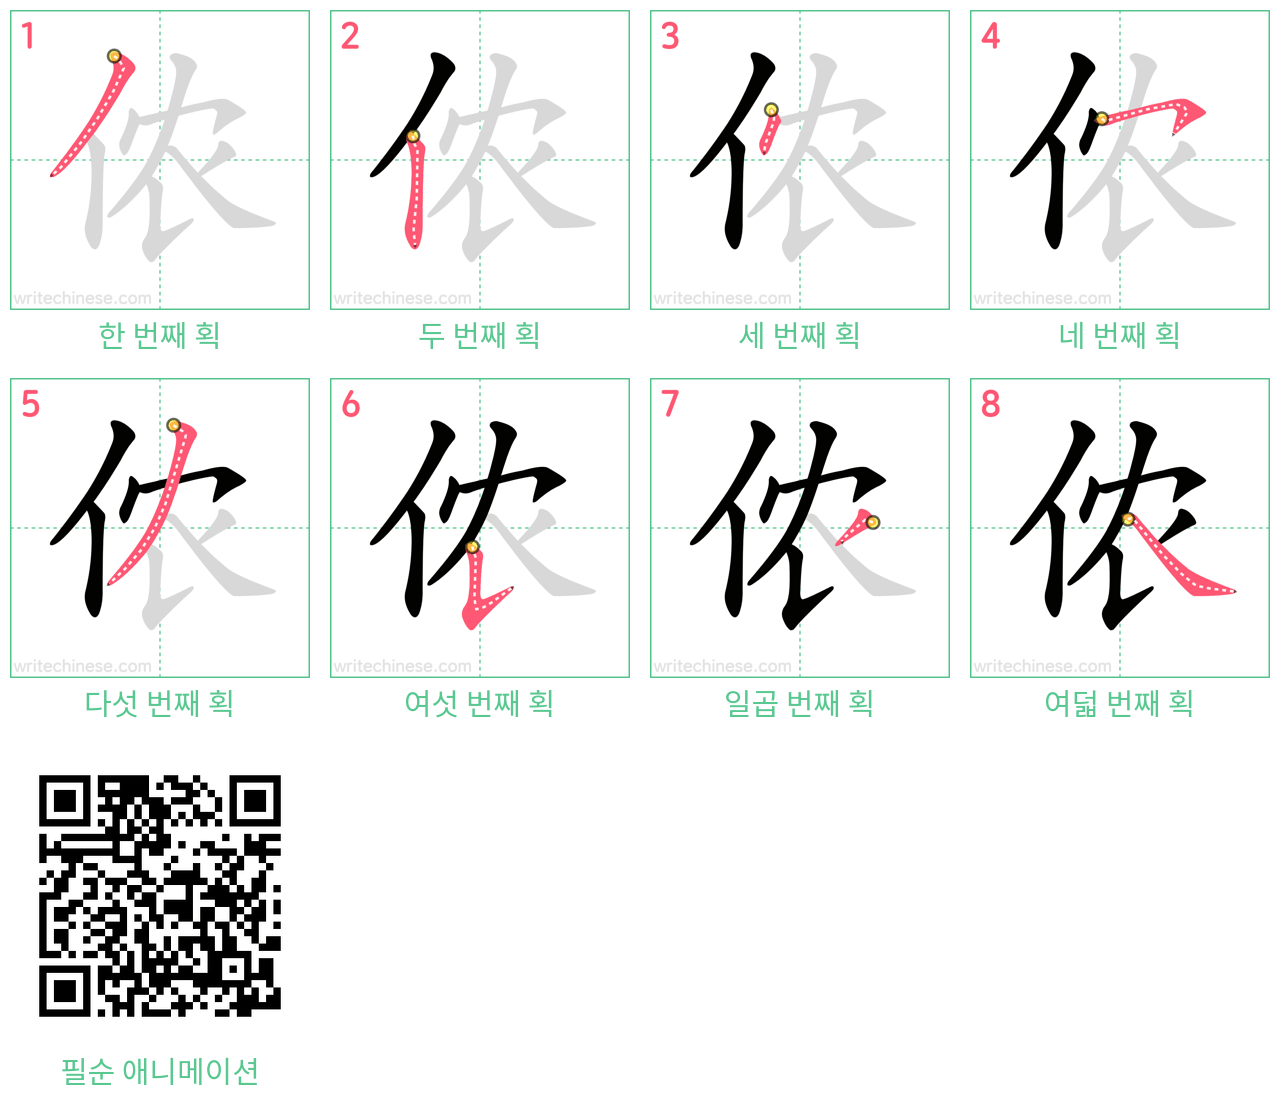 侬 step-by-step stroke order diagrams